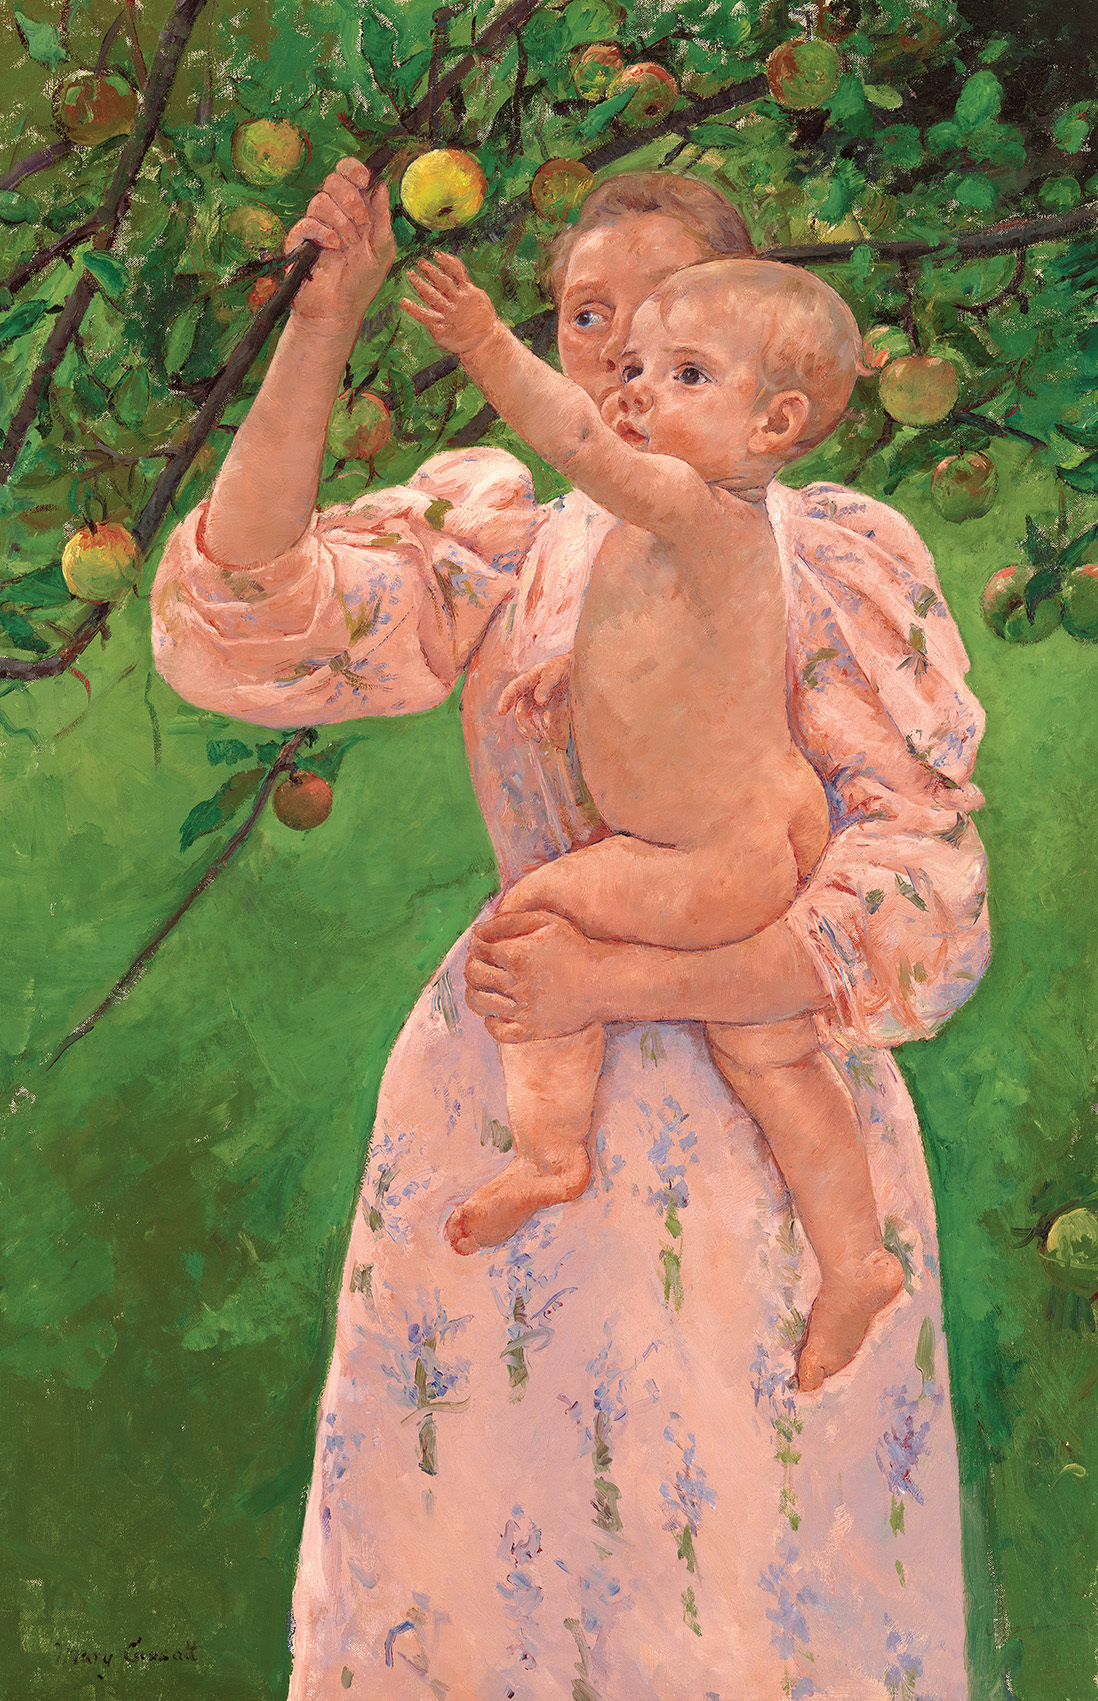 《果実をとろうとする子ども》1893年、油彩・カンヴァス、 ヴァージニア美術館蔵 Virginia Museum of Fine Arts, Richmond. Gift of Ivor and Anne Massey.